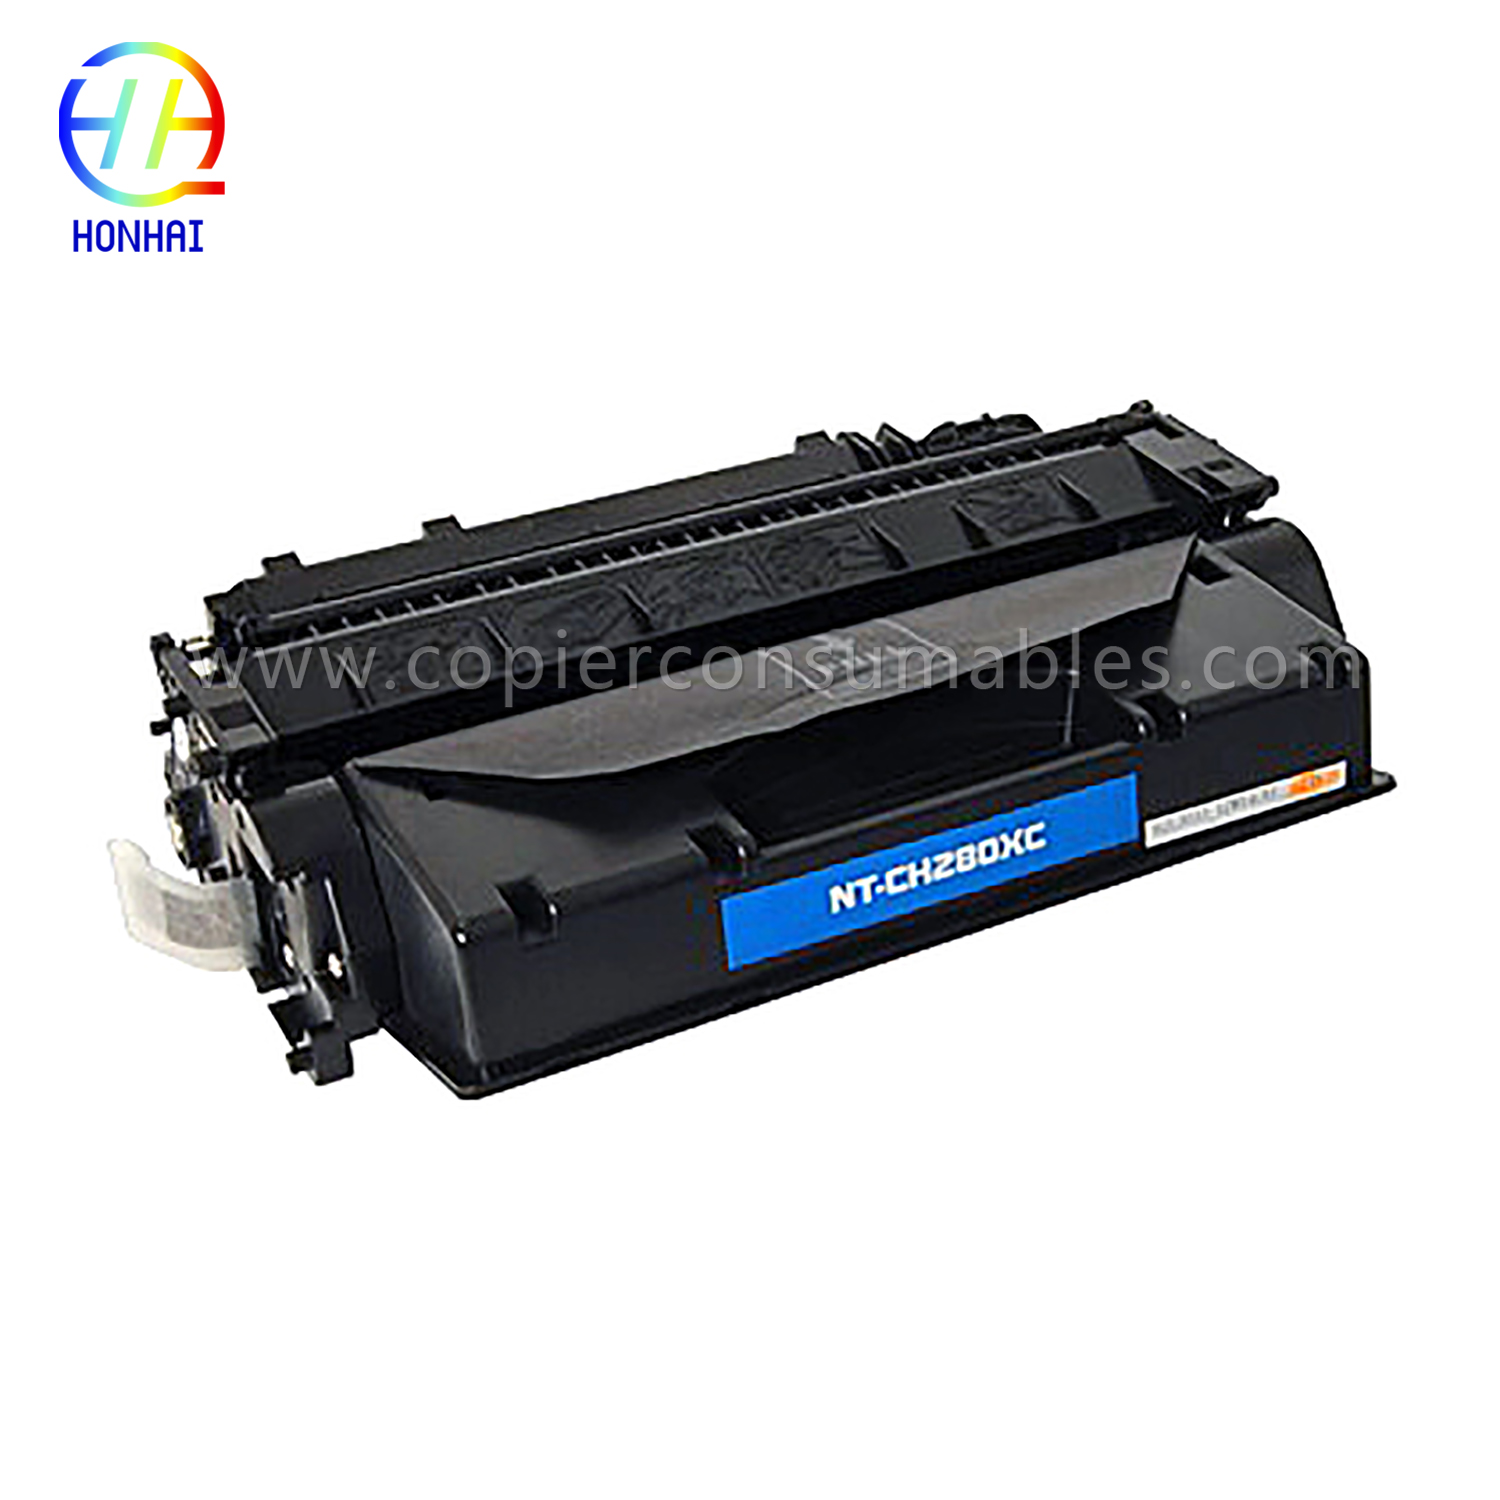 Toner Cartridge HP LaserJet Pro 400 M401 MFP M425 (CF280X) 13.2x4.3x8.3 (4)